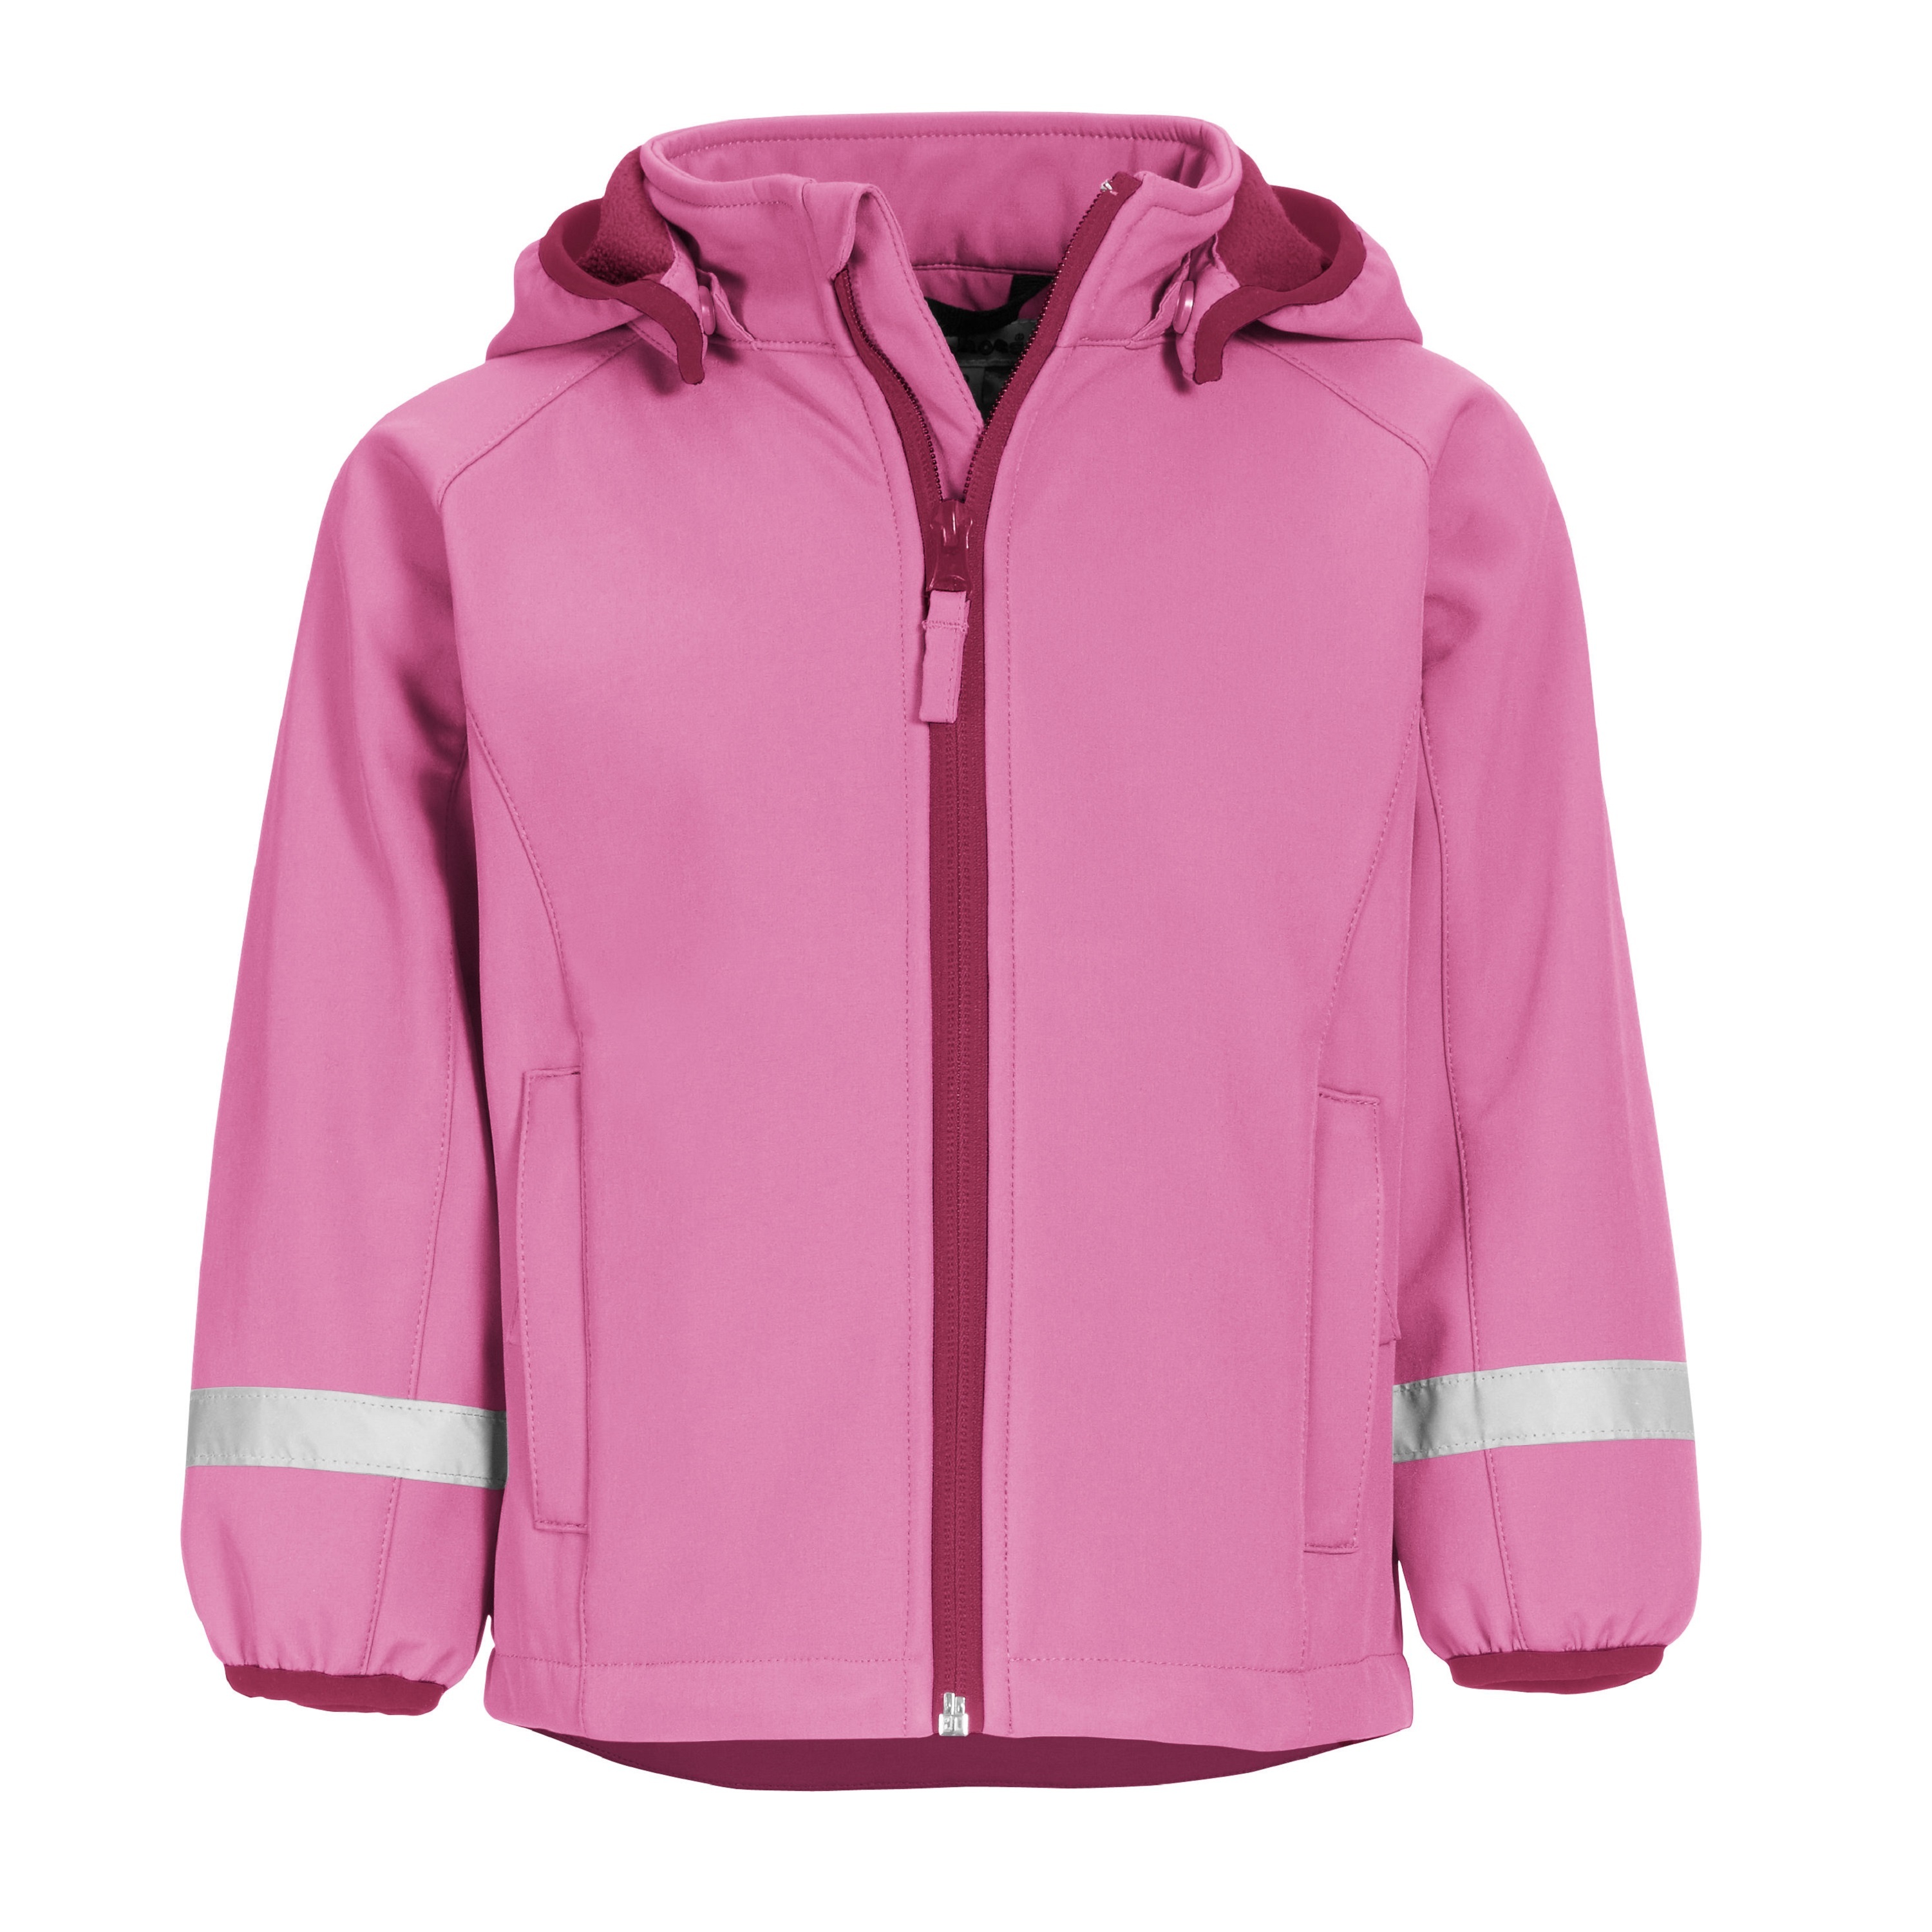 Куртка детская Playshoes 430110, розовый, 98